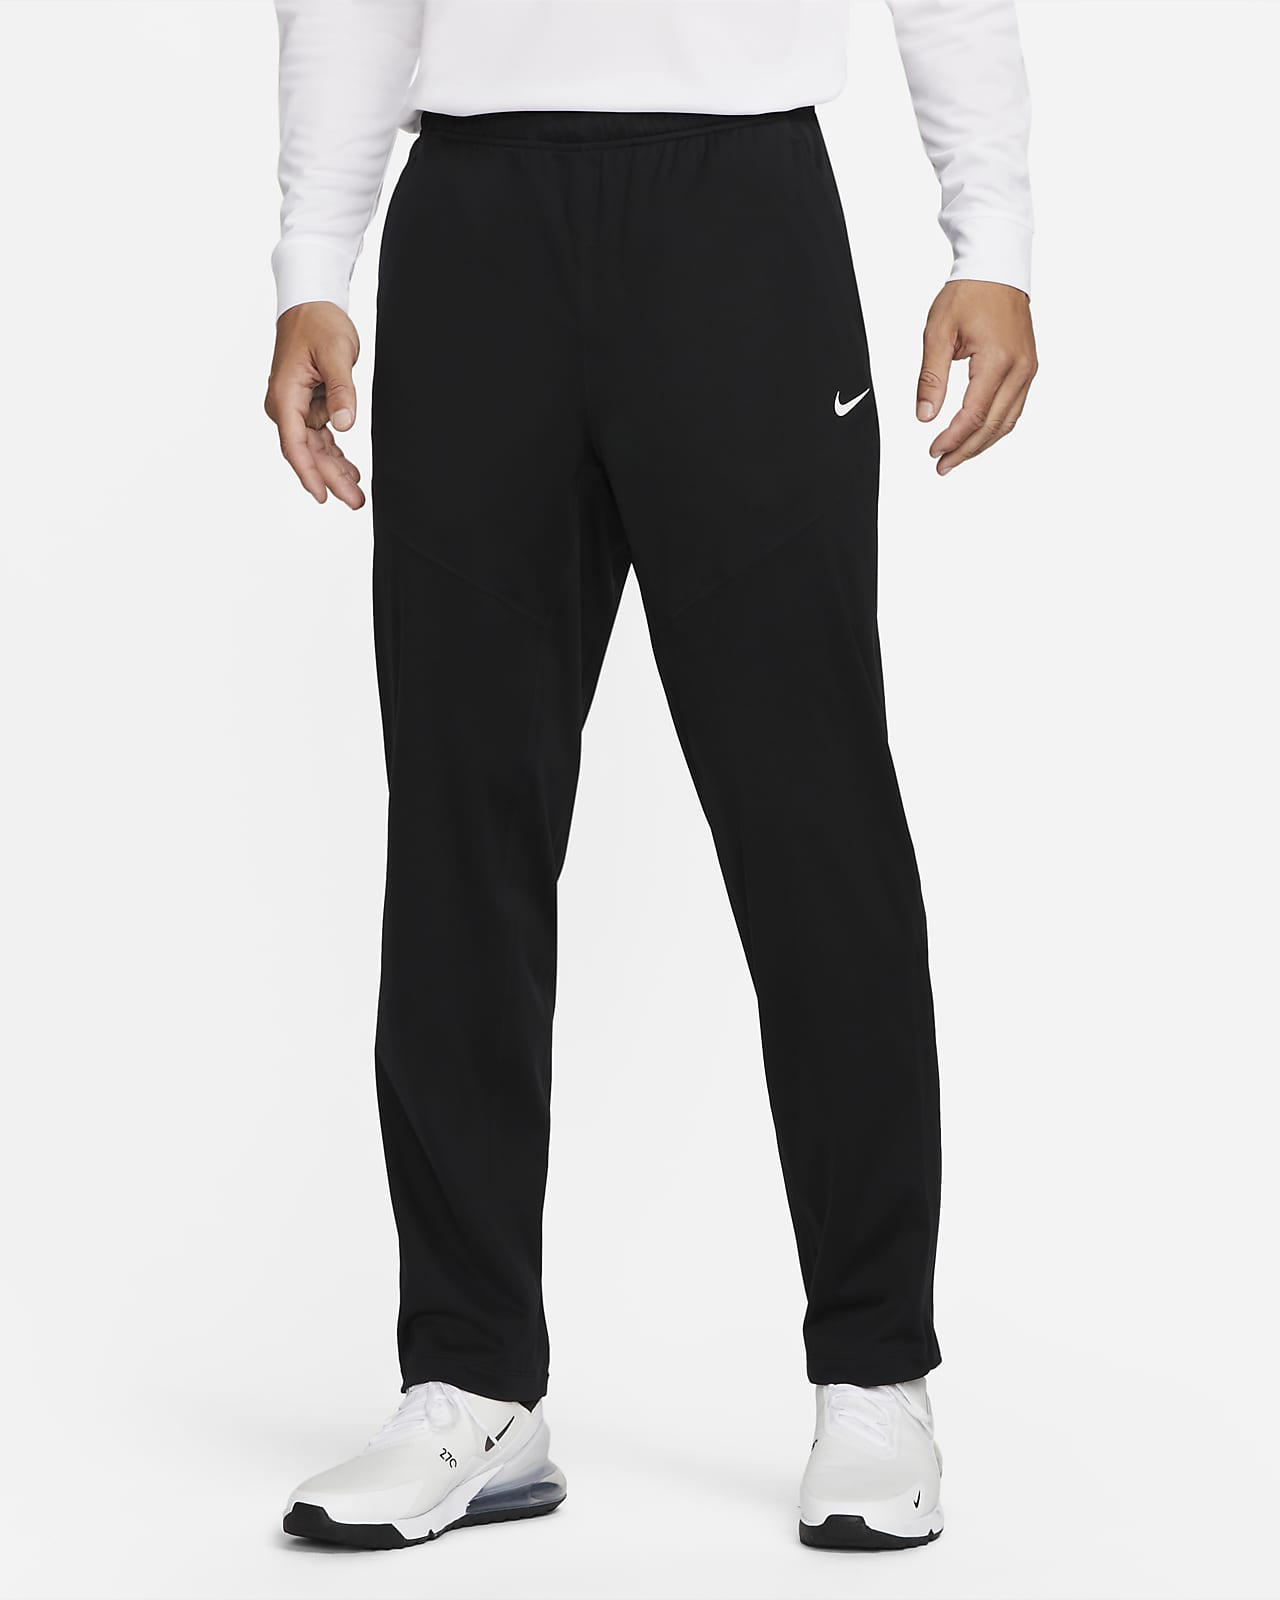 Storm-FIT Men's Golf Pants. Nike.com